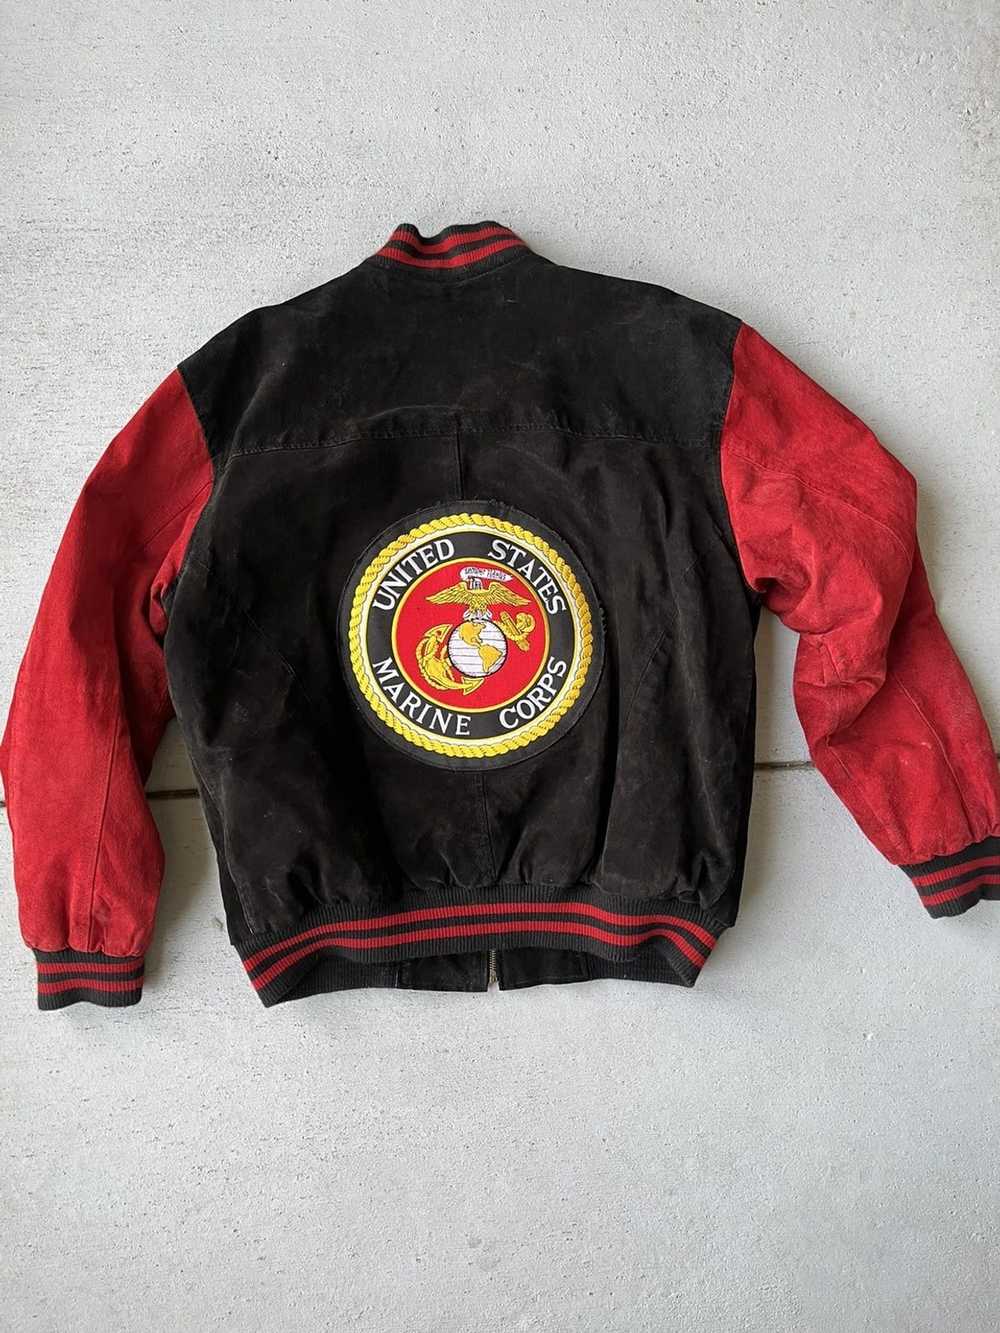 Military × Vintage Marines Leather Jacket - image 2